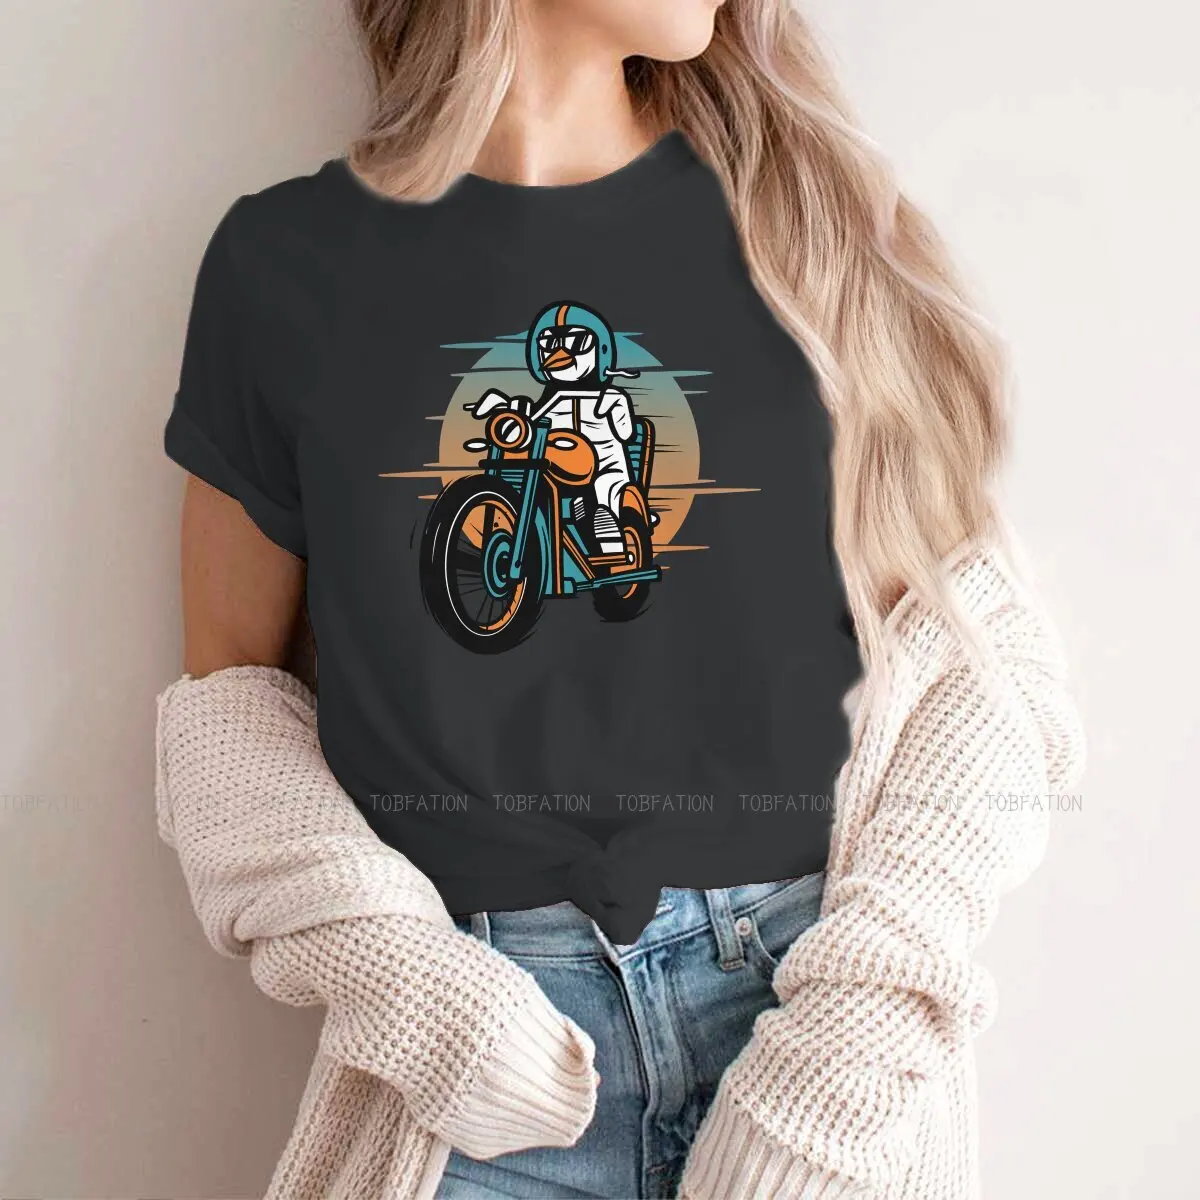 Serin Retro Biker Penguen Klasik kadın T Shirt Motosiklet Sevgilisi Bayanlar Tees Kawaii pamuklu üst giyim Temel Tshirt Büyük Boy Moda